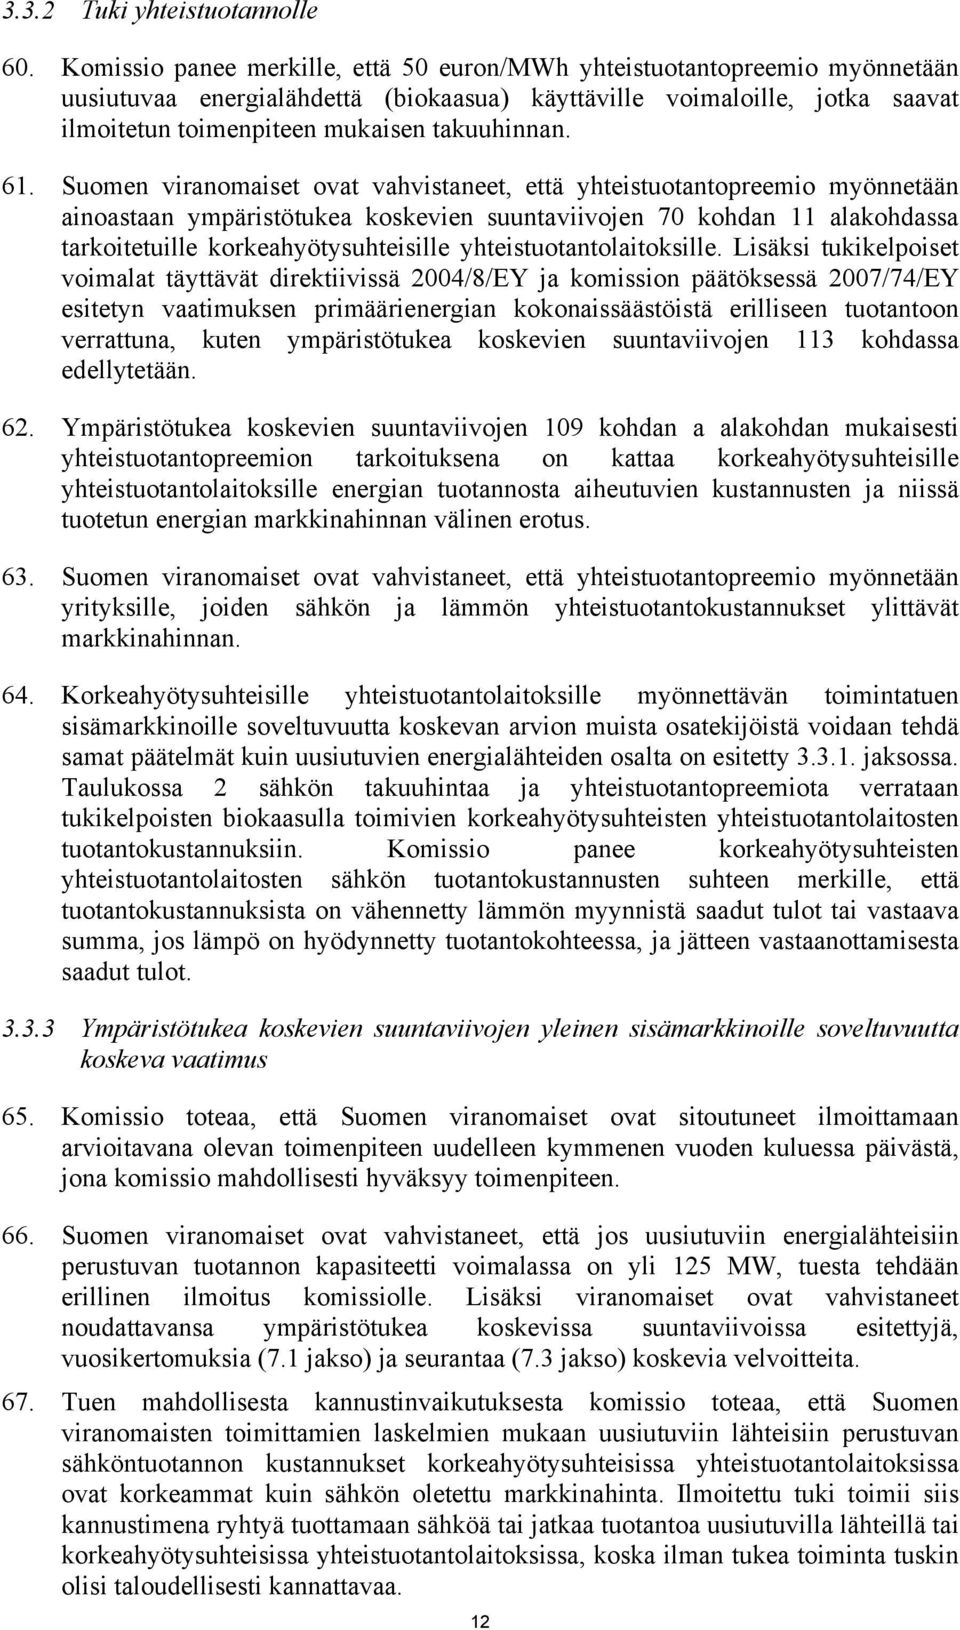 61. Suomen viranomaiset ovat vahvistaneet, että yhteistuotantopreemio myönnetään ainoastaan ympäristötukea koskevien suuntaviivojen 70 kohdan 11 alakohdassa tarkoitetuille korkeahyötysuhteisille